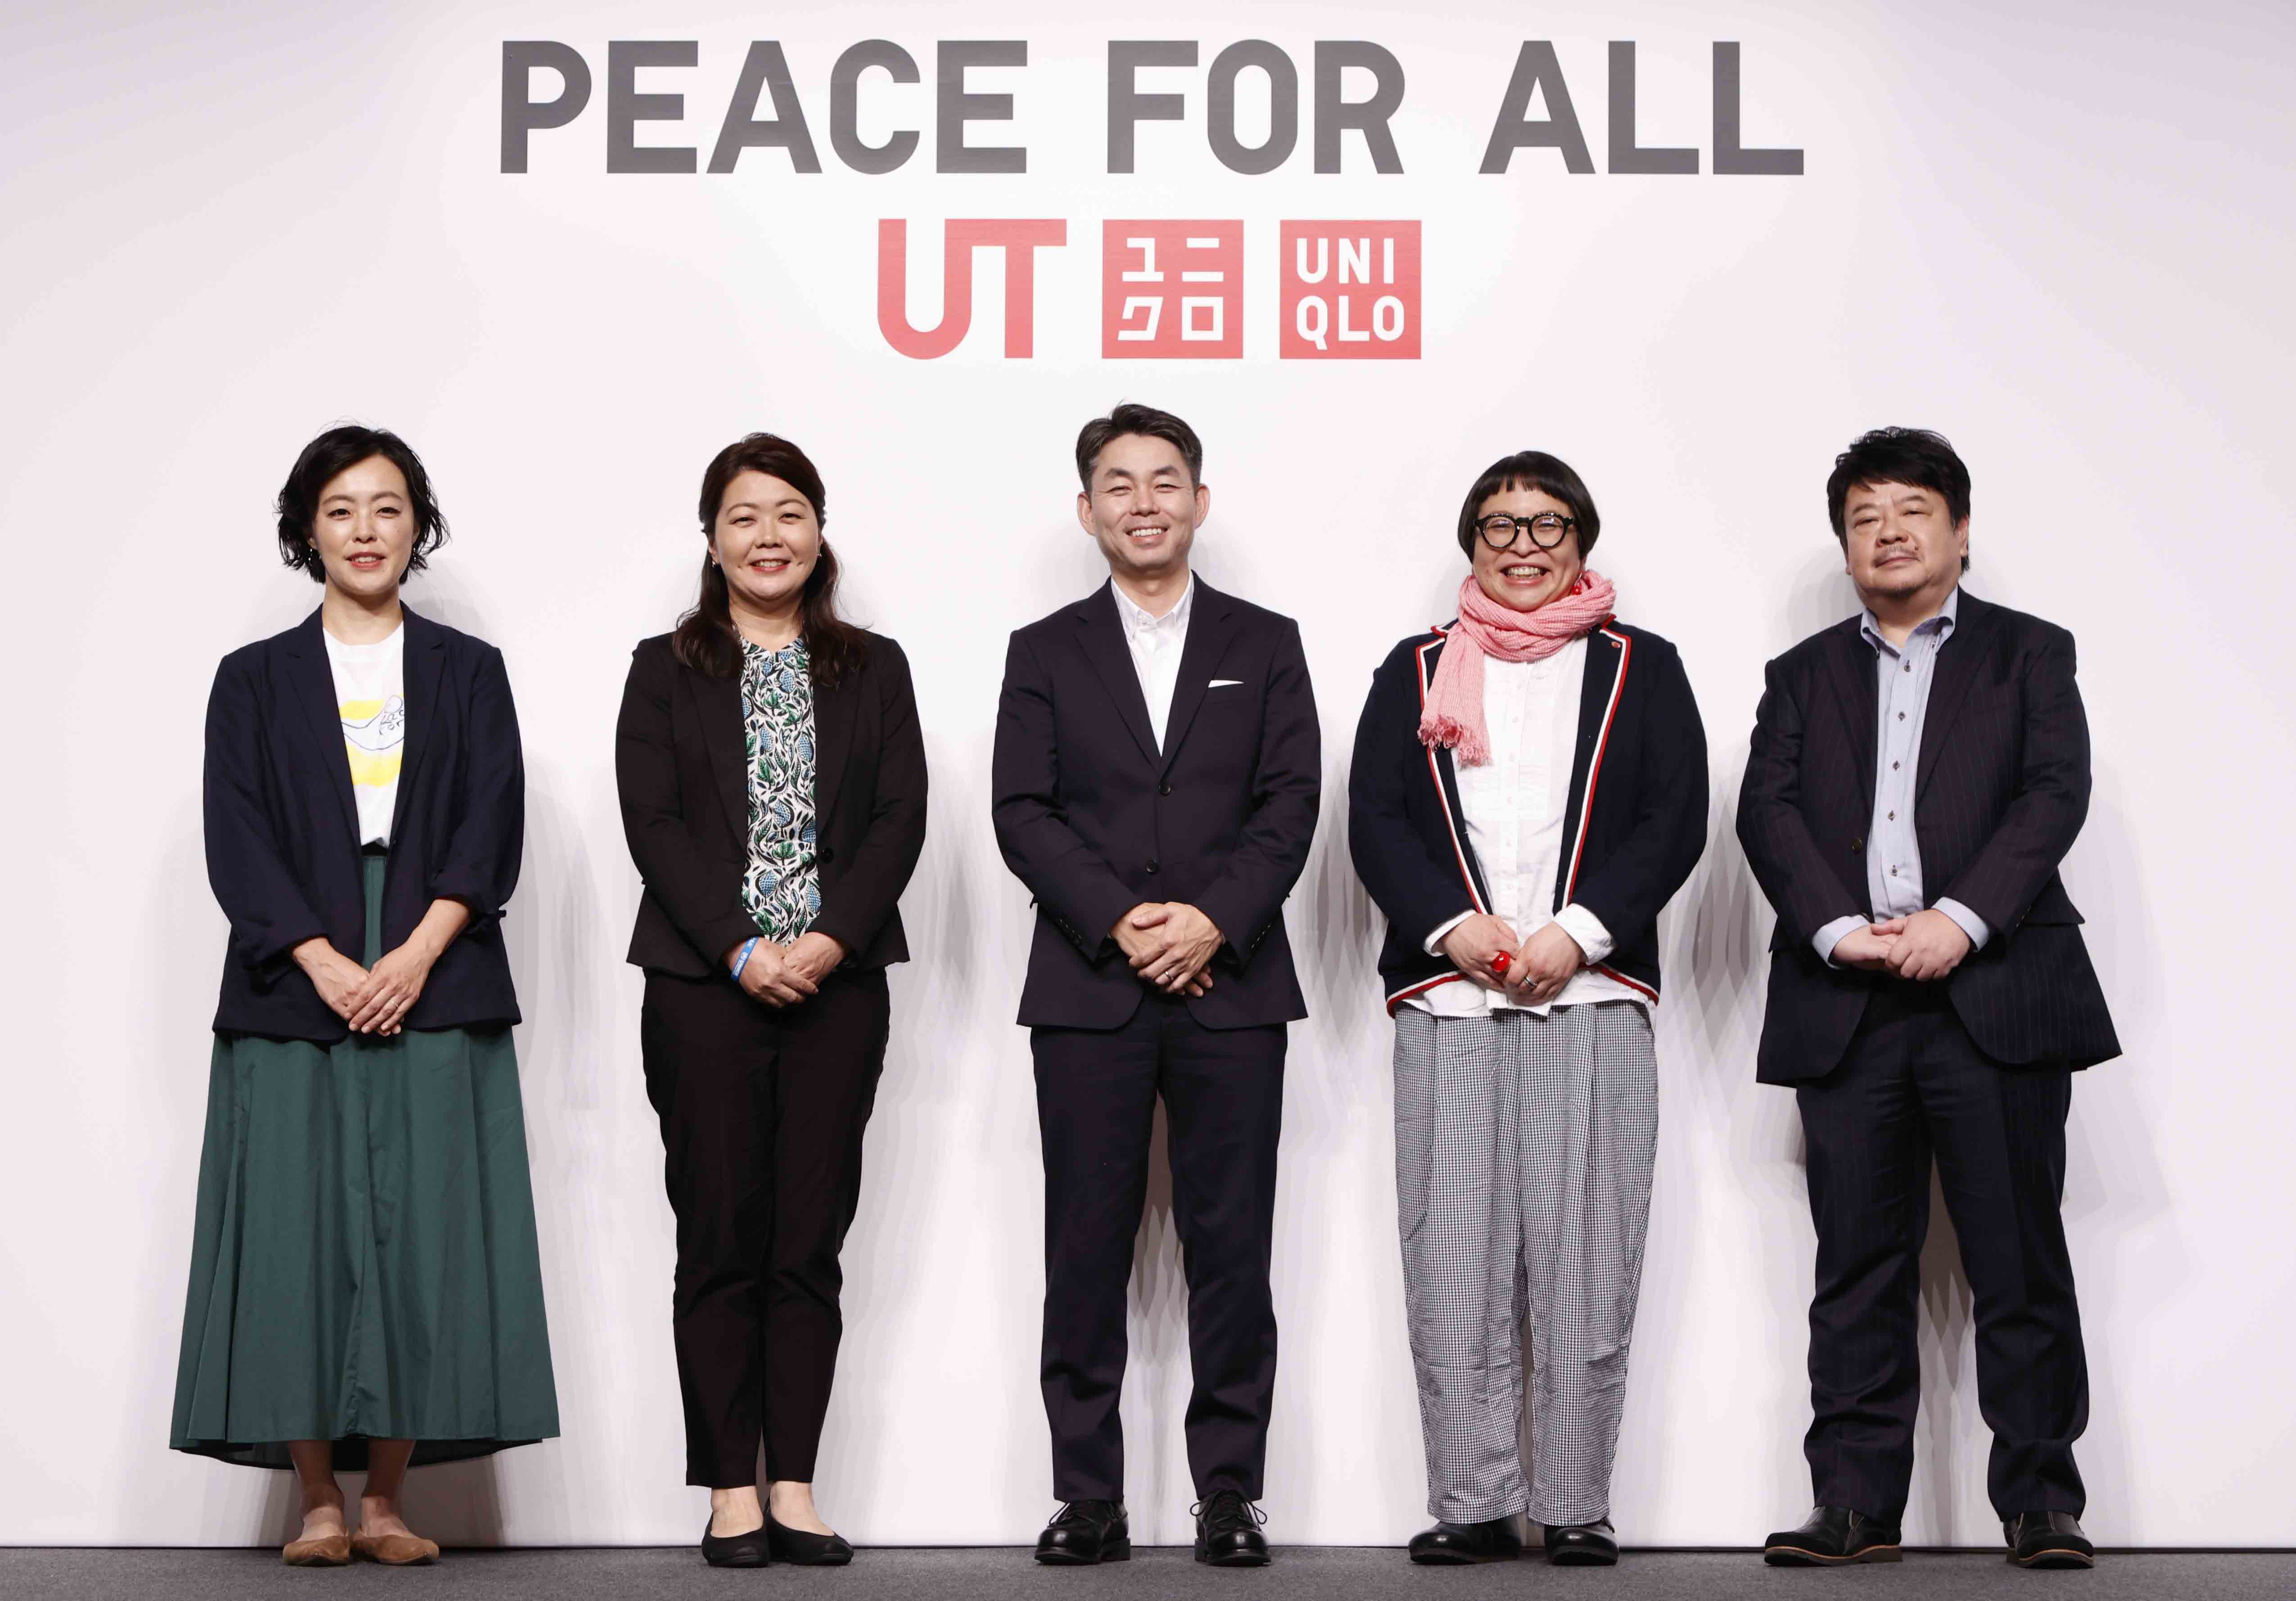 Ra mắt bộ sưu tập áo thun UT Peace for all, UNIQLO sẽ sử dụng 100% lợi nhuận cho mục đích thiện nguyện